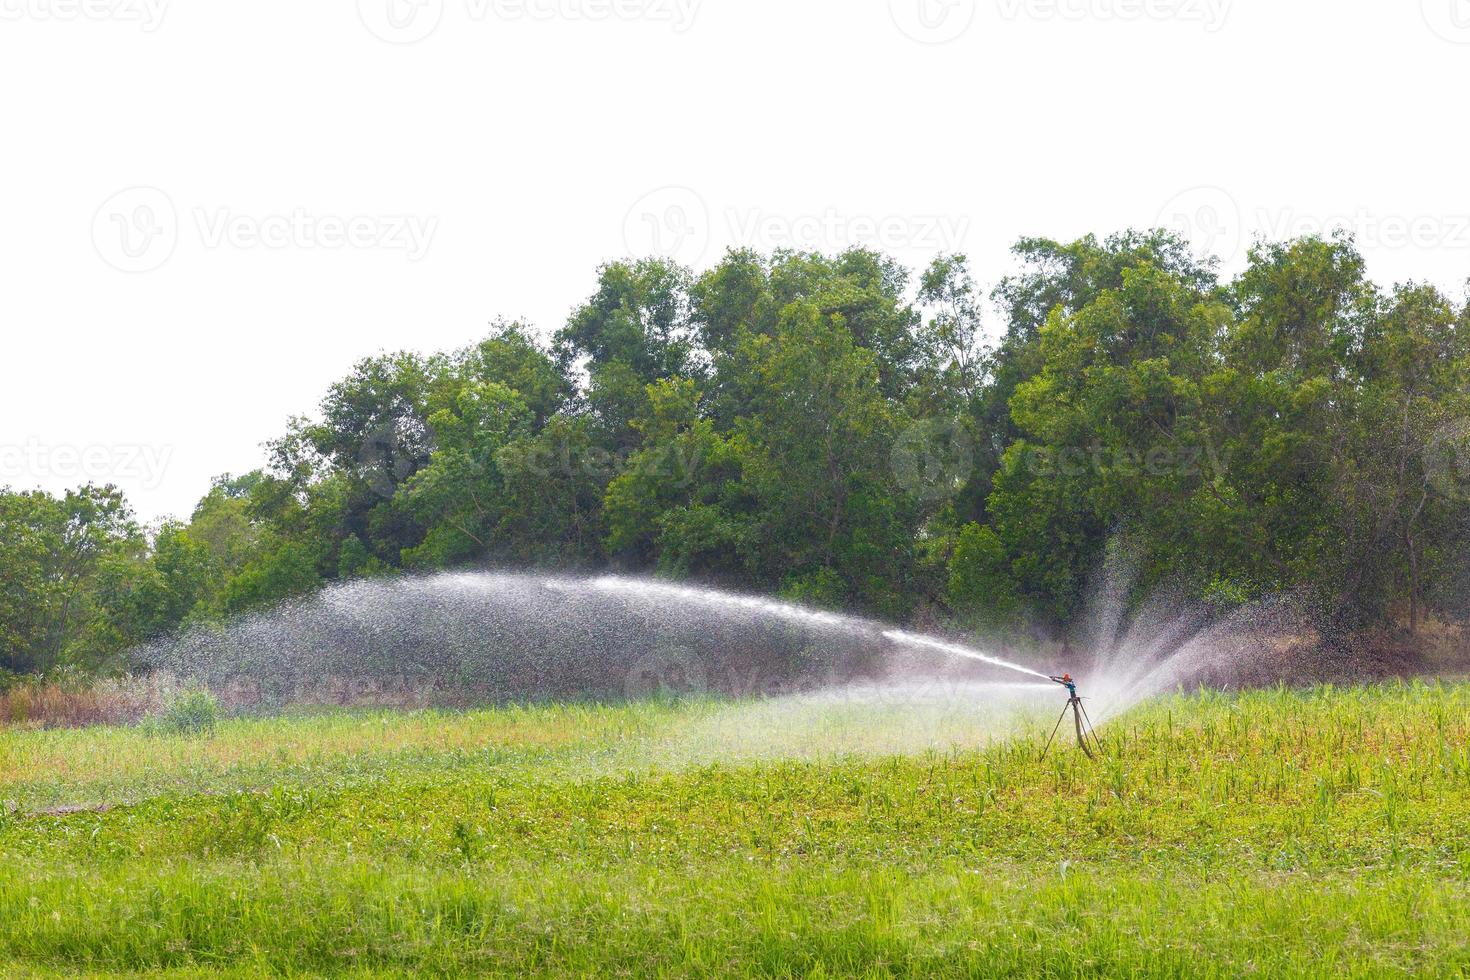 jordbruksbevattningssystem som vattnar gården på en vit bakgrund foto